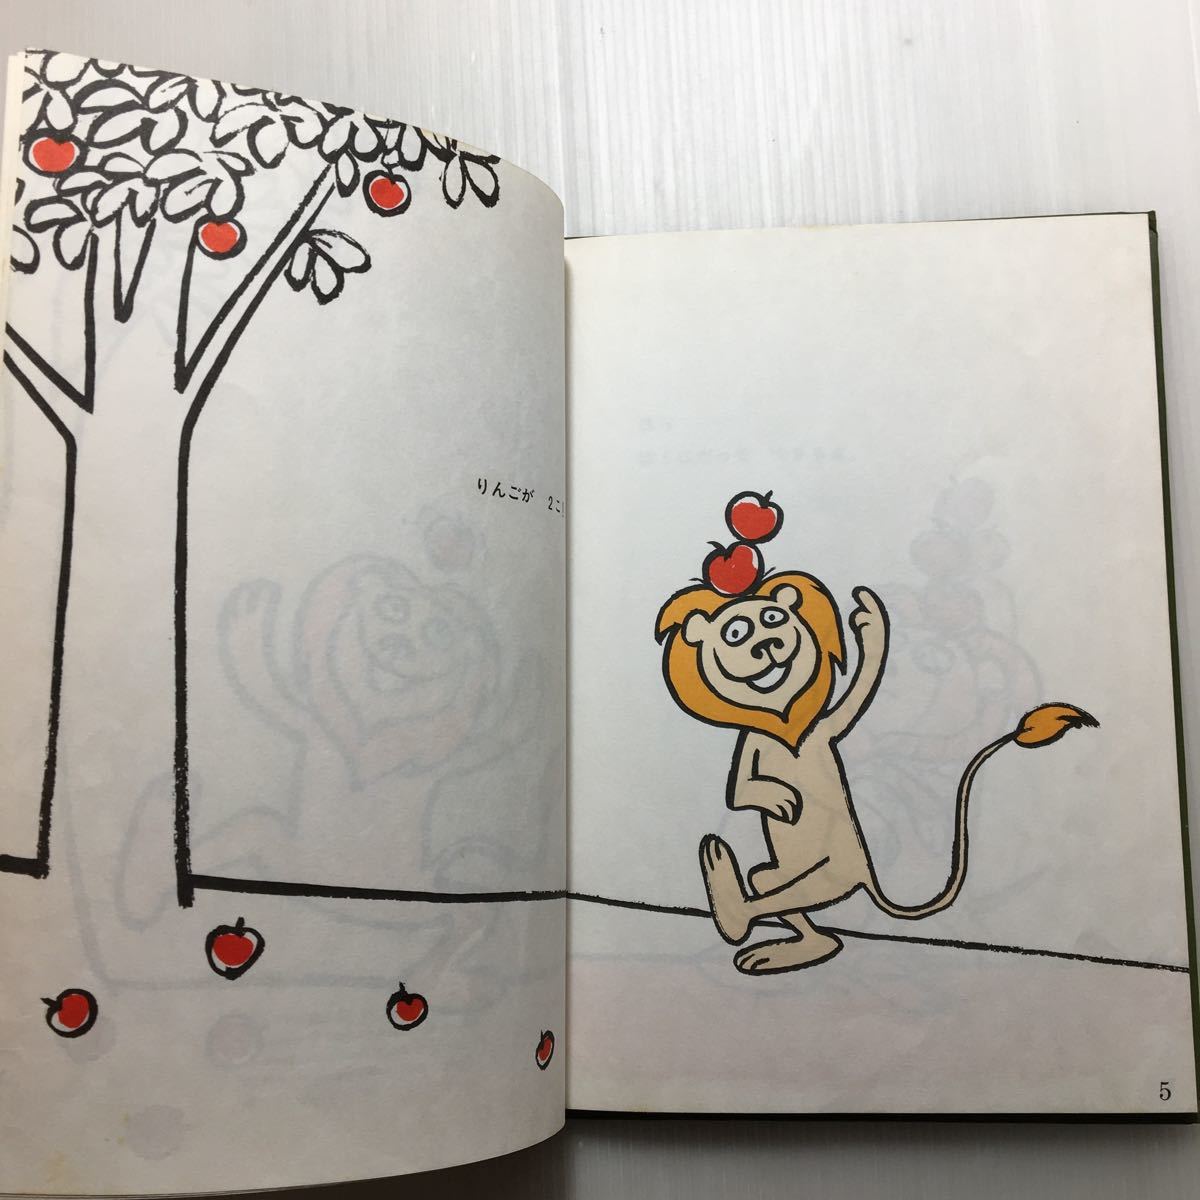 zaa-151♪あたまのうえにりんごがいくつ? (はじめてひとりでよむ本) 1983年　セオ・レスィーグ (著)ロイ・マッキー (絵)